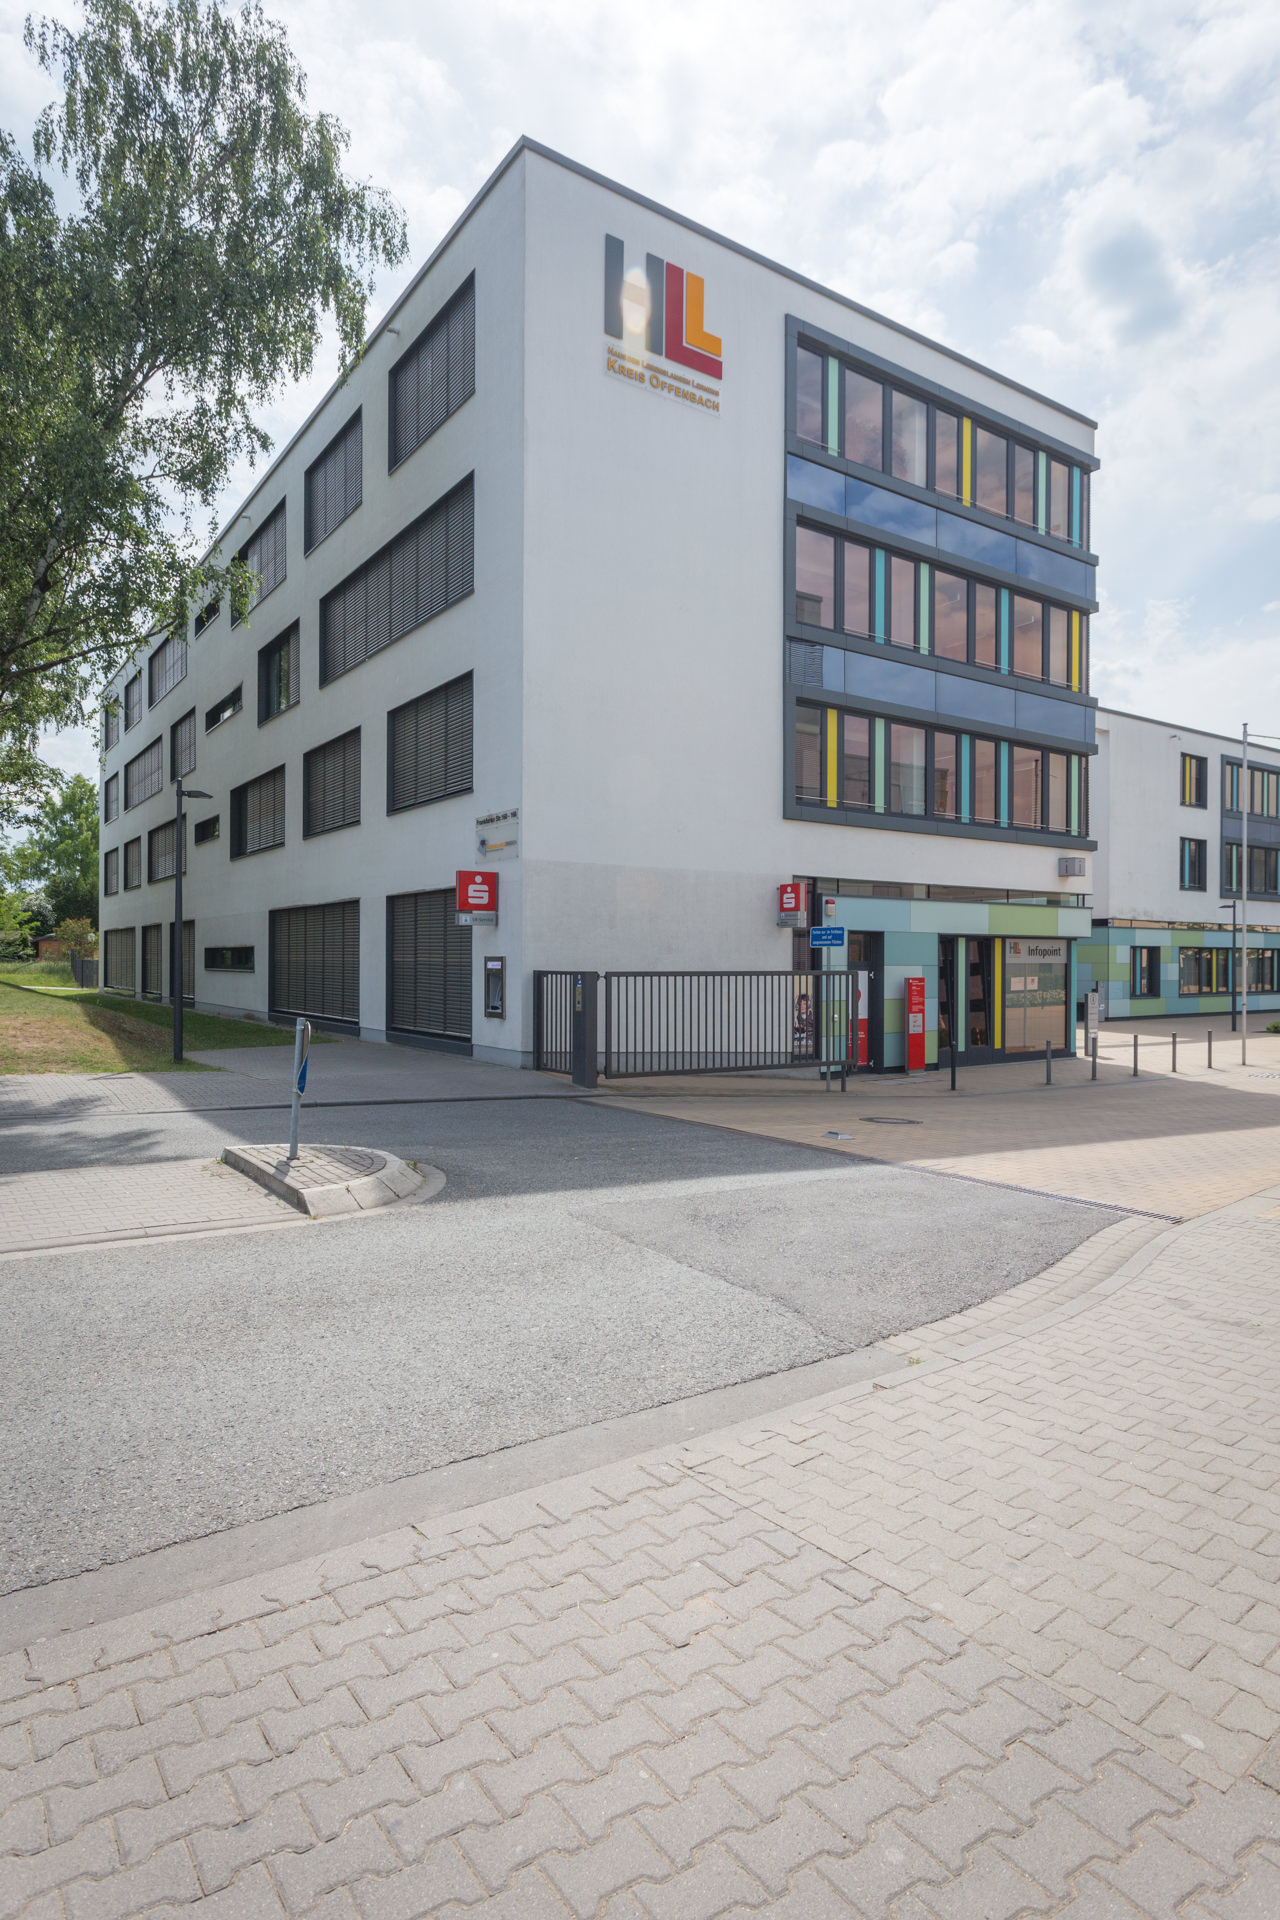 Sparkasse SB-Geschäftsstelle Haus des Lebenslangen Lernens - Campus Dreieich